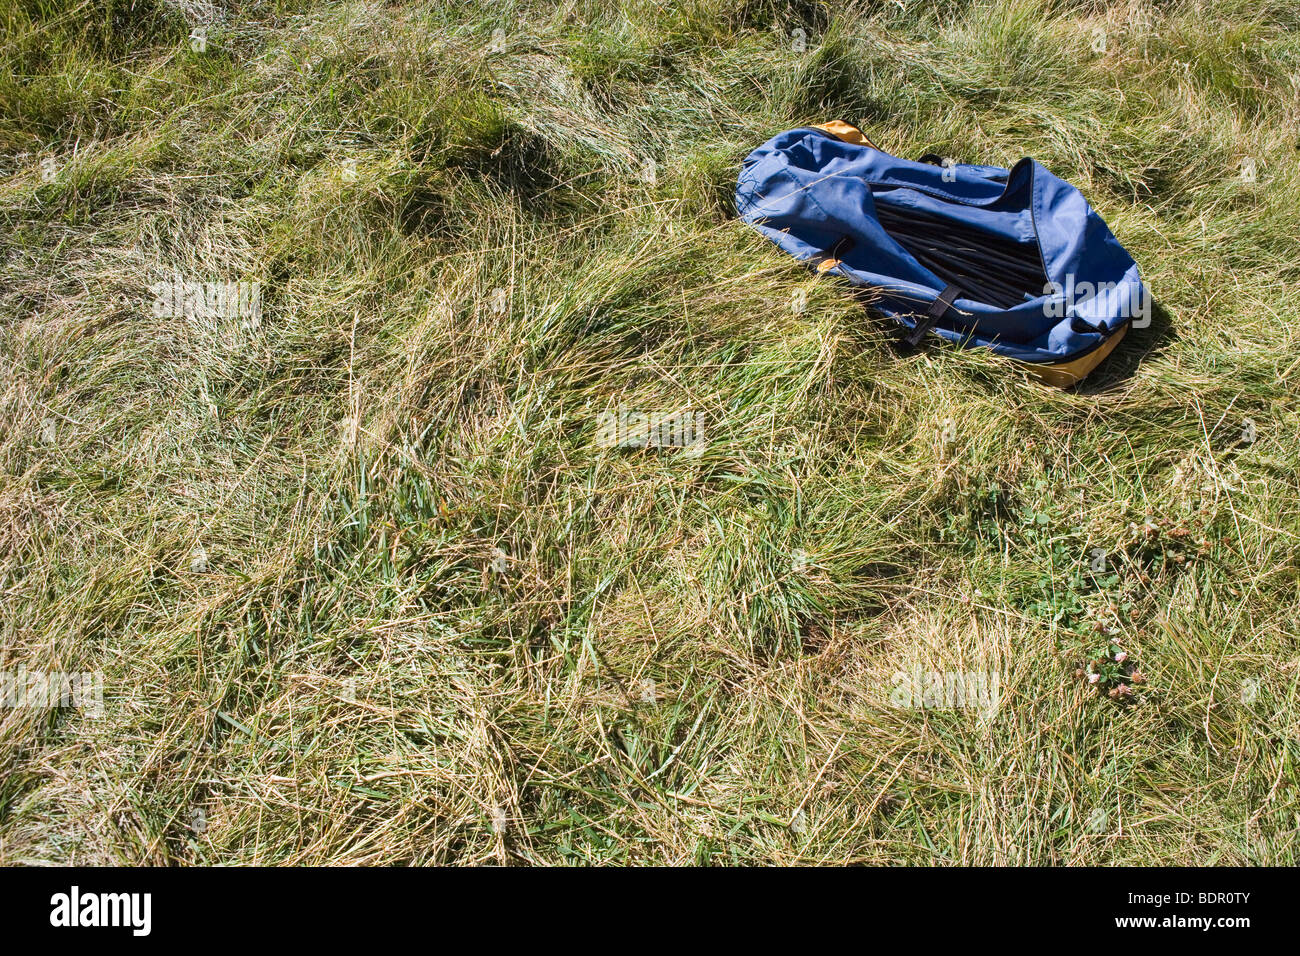 Un sac contenant une tente et des poteaux est assis sur l'herbe dans un camping Banque D'Images